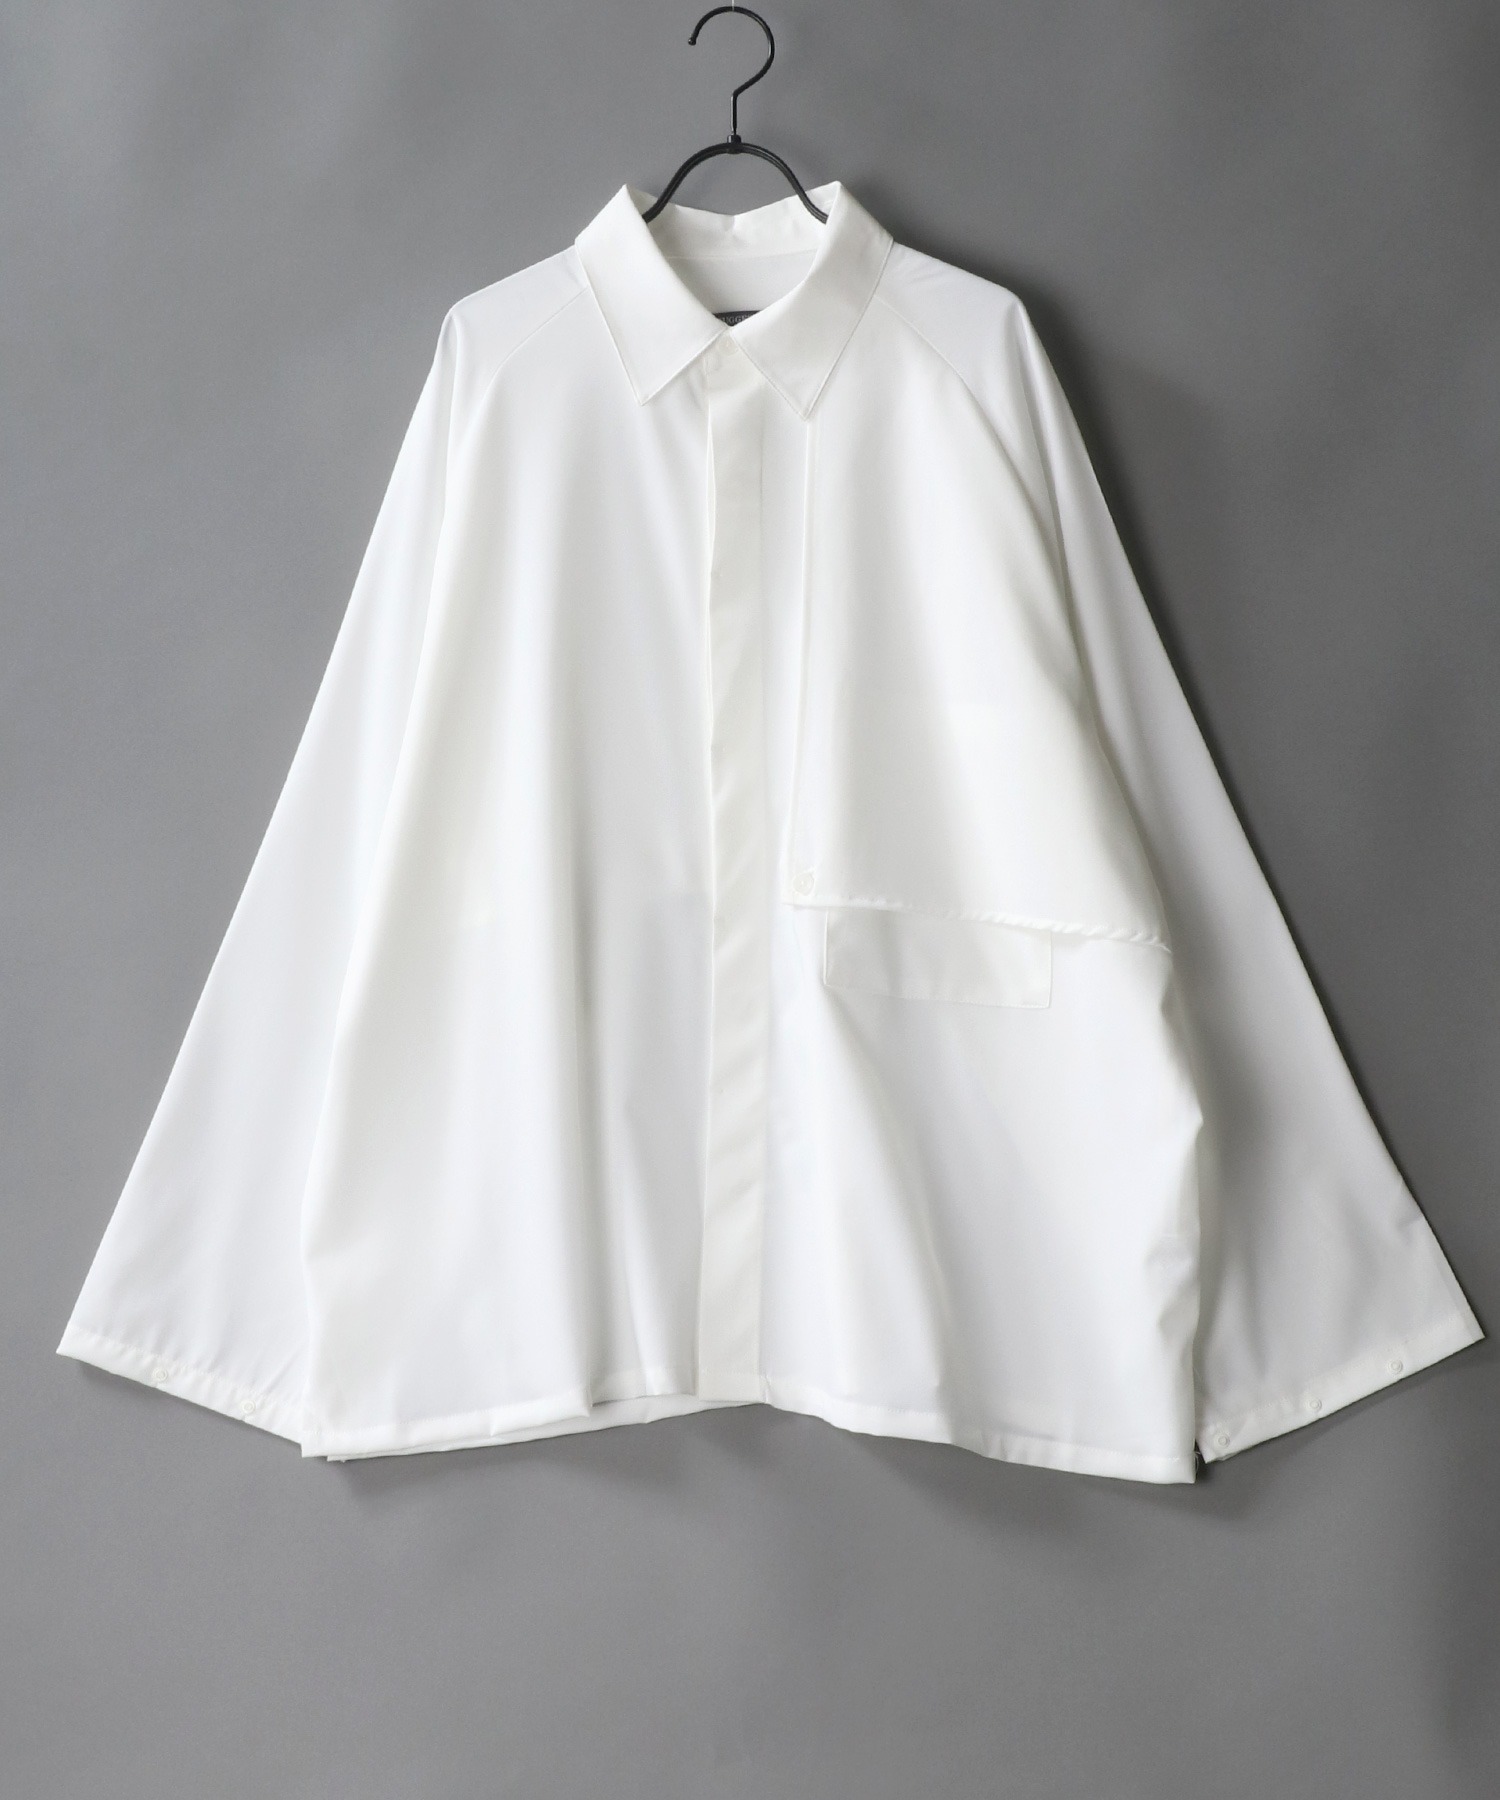 SITRY raglan sleeve 即納 最大半額 wide trench shirt とっておきし新春福袋 シャツジャケット シトリー ワイド ラグランスリーブ Jacket トレンチ